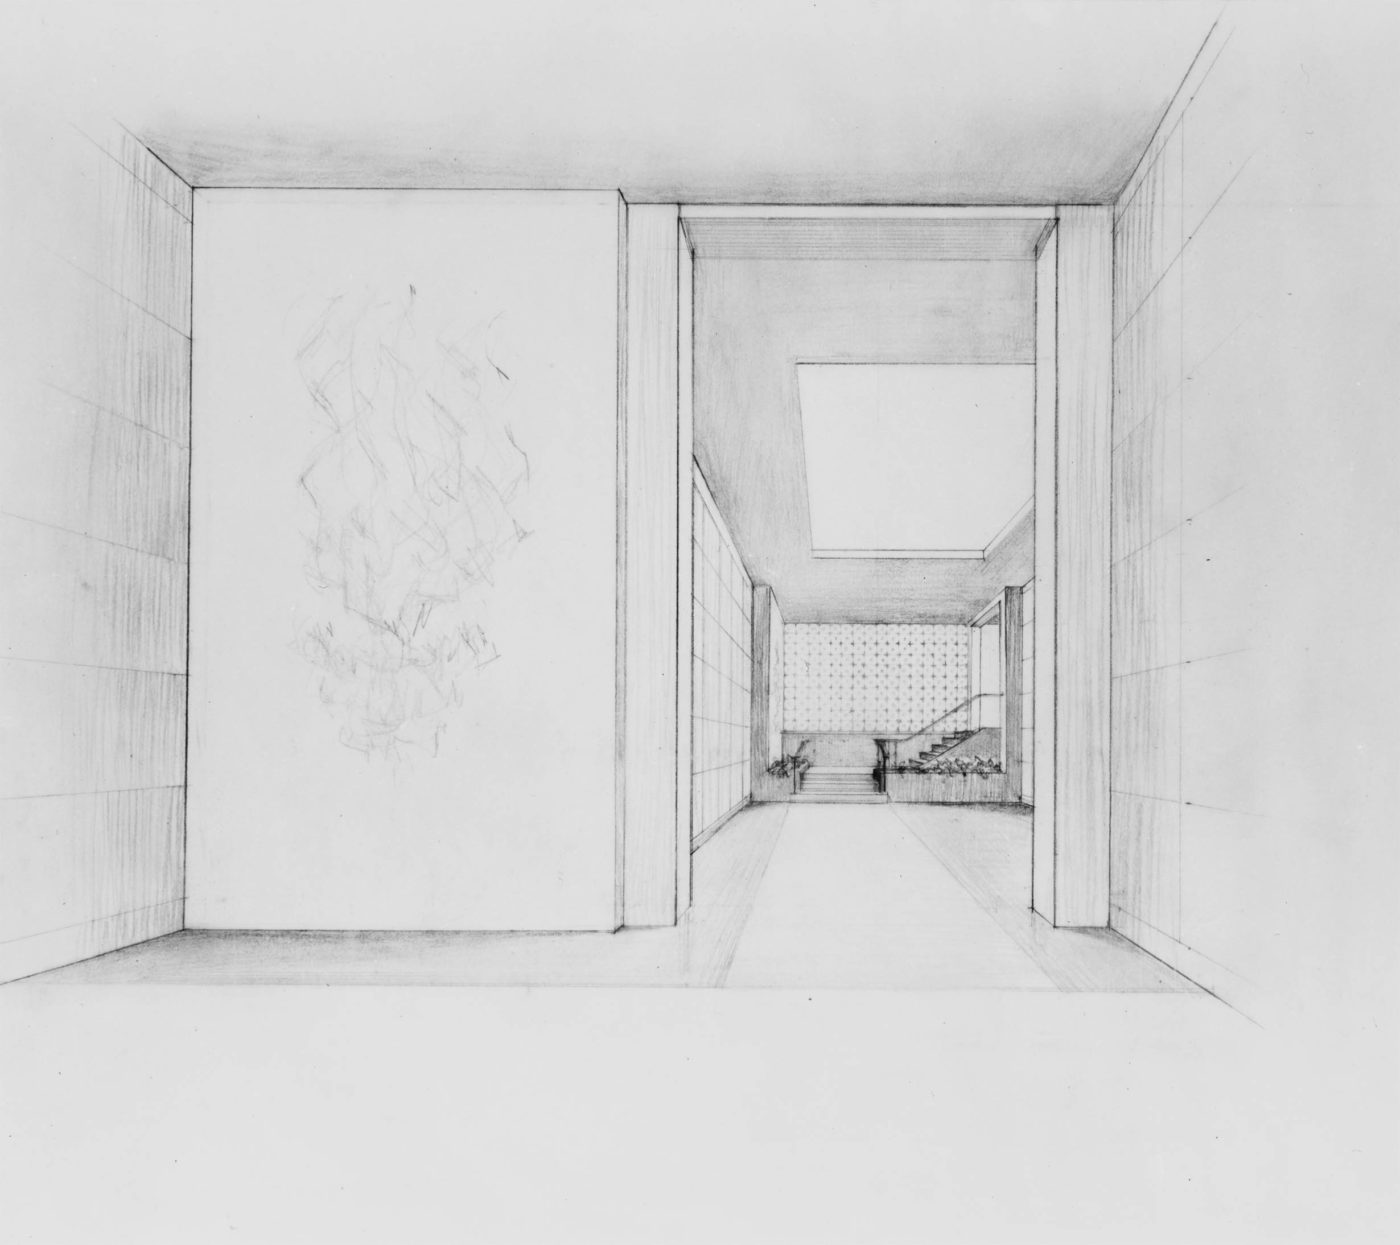 Sketch for the interior of a mausoleum complex